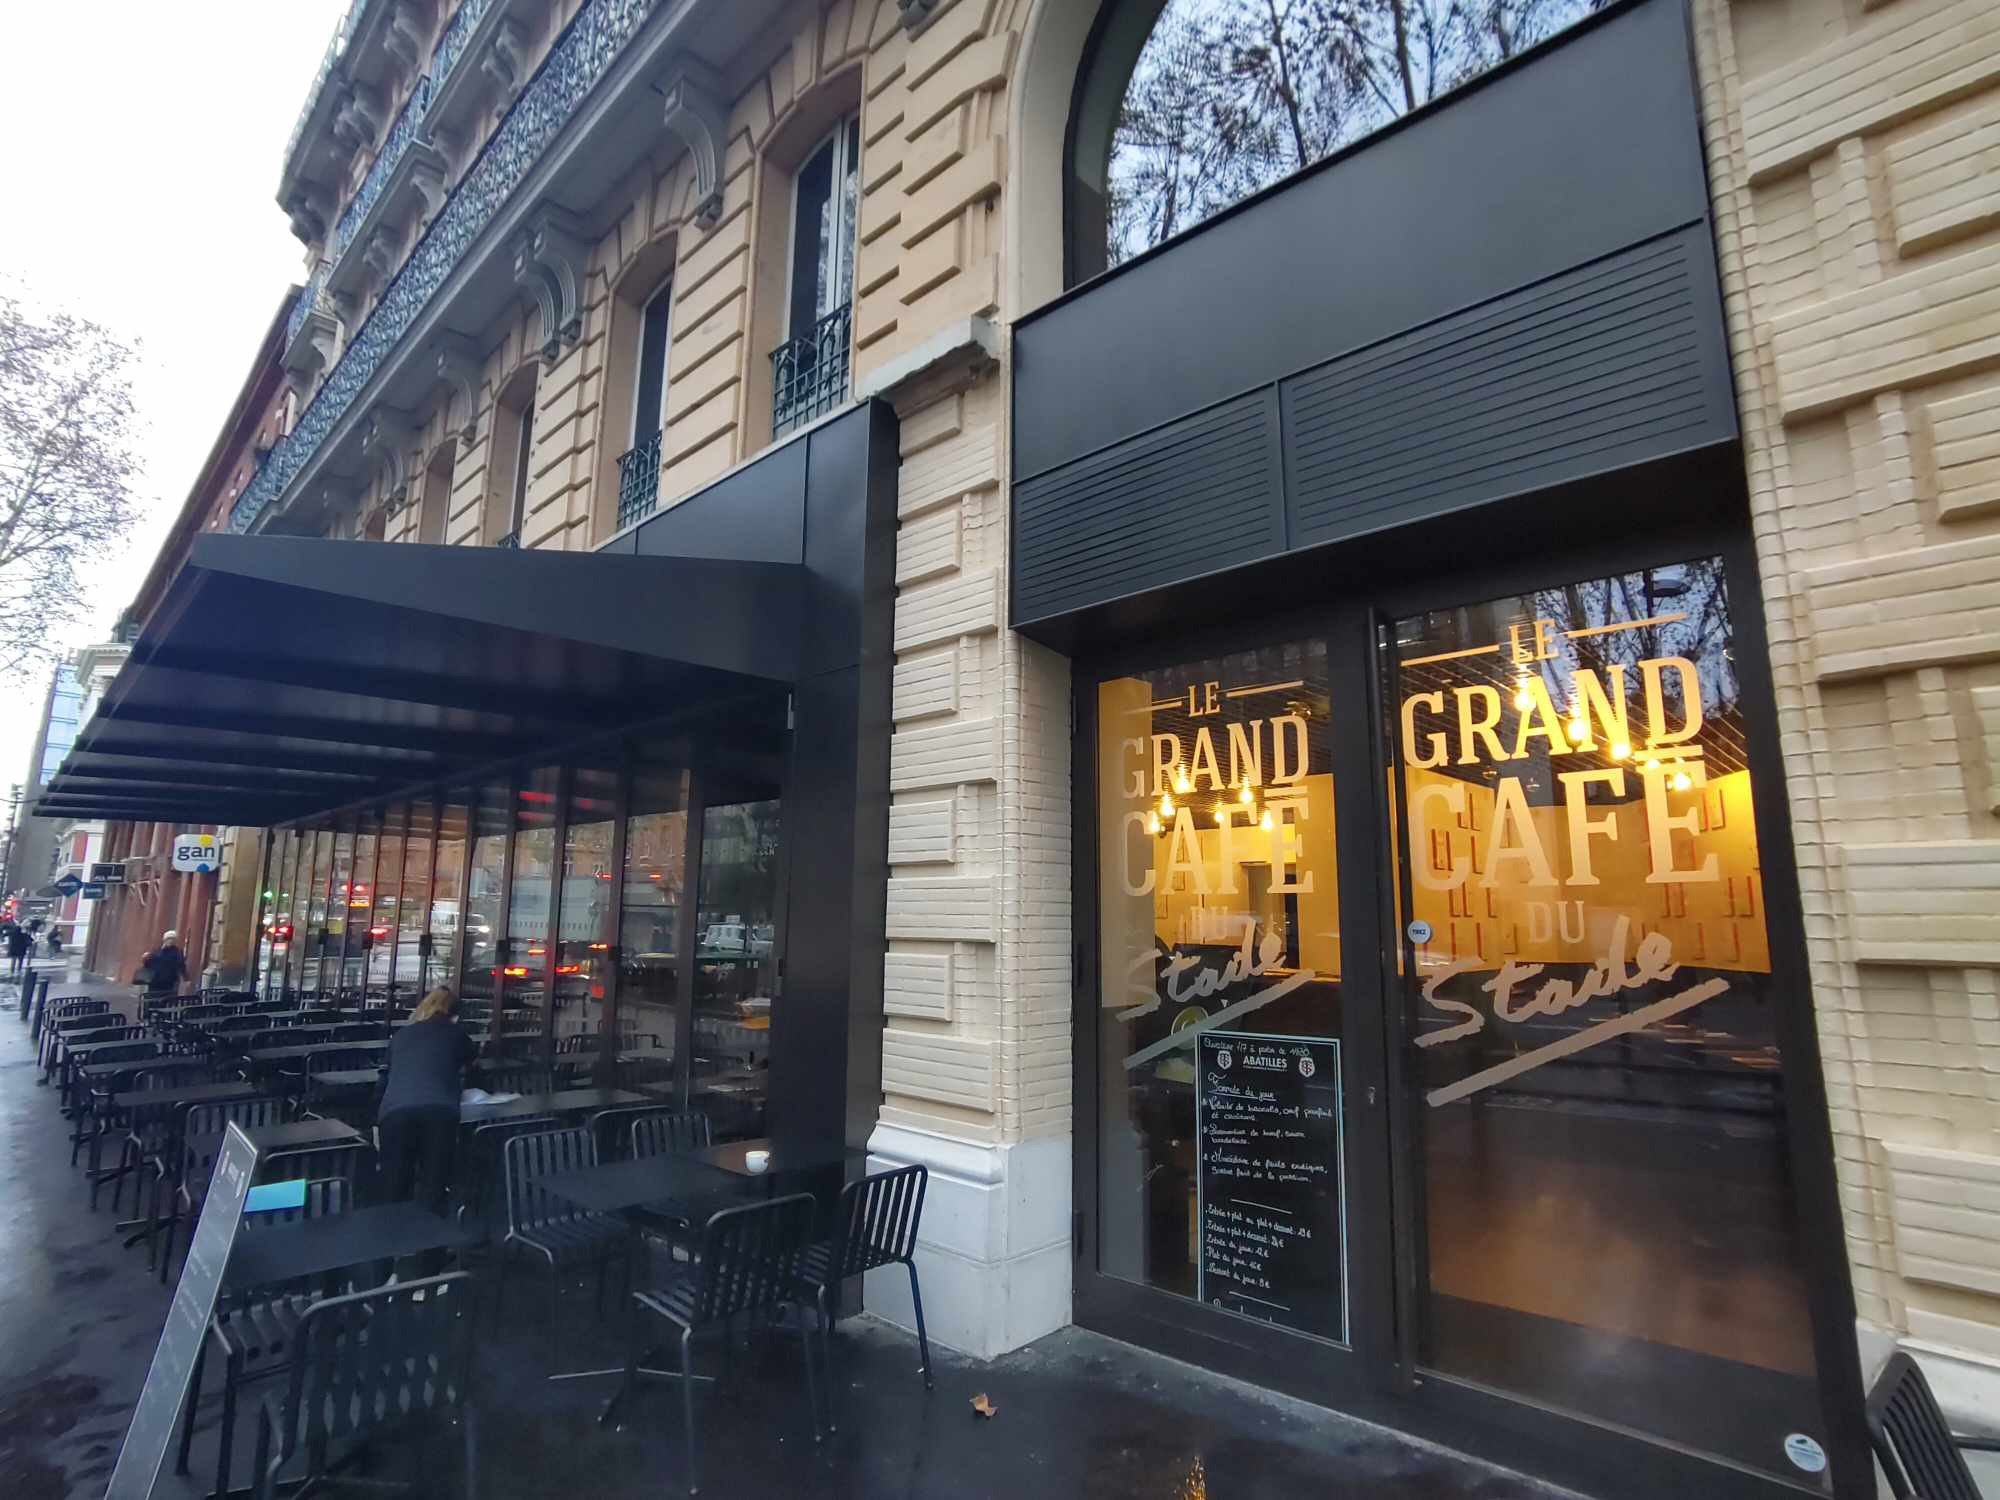 Sous la houlette du Stade toulousain, le Grand Café du Stade est situé boulevard Carnot à Toulouse. Ouvert sept jours sur sept, il se veut un authentique café des sports et pas que du rugby. LP/Paul Périé